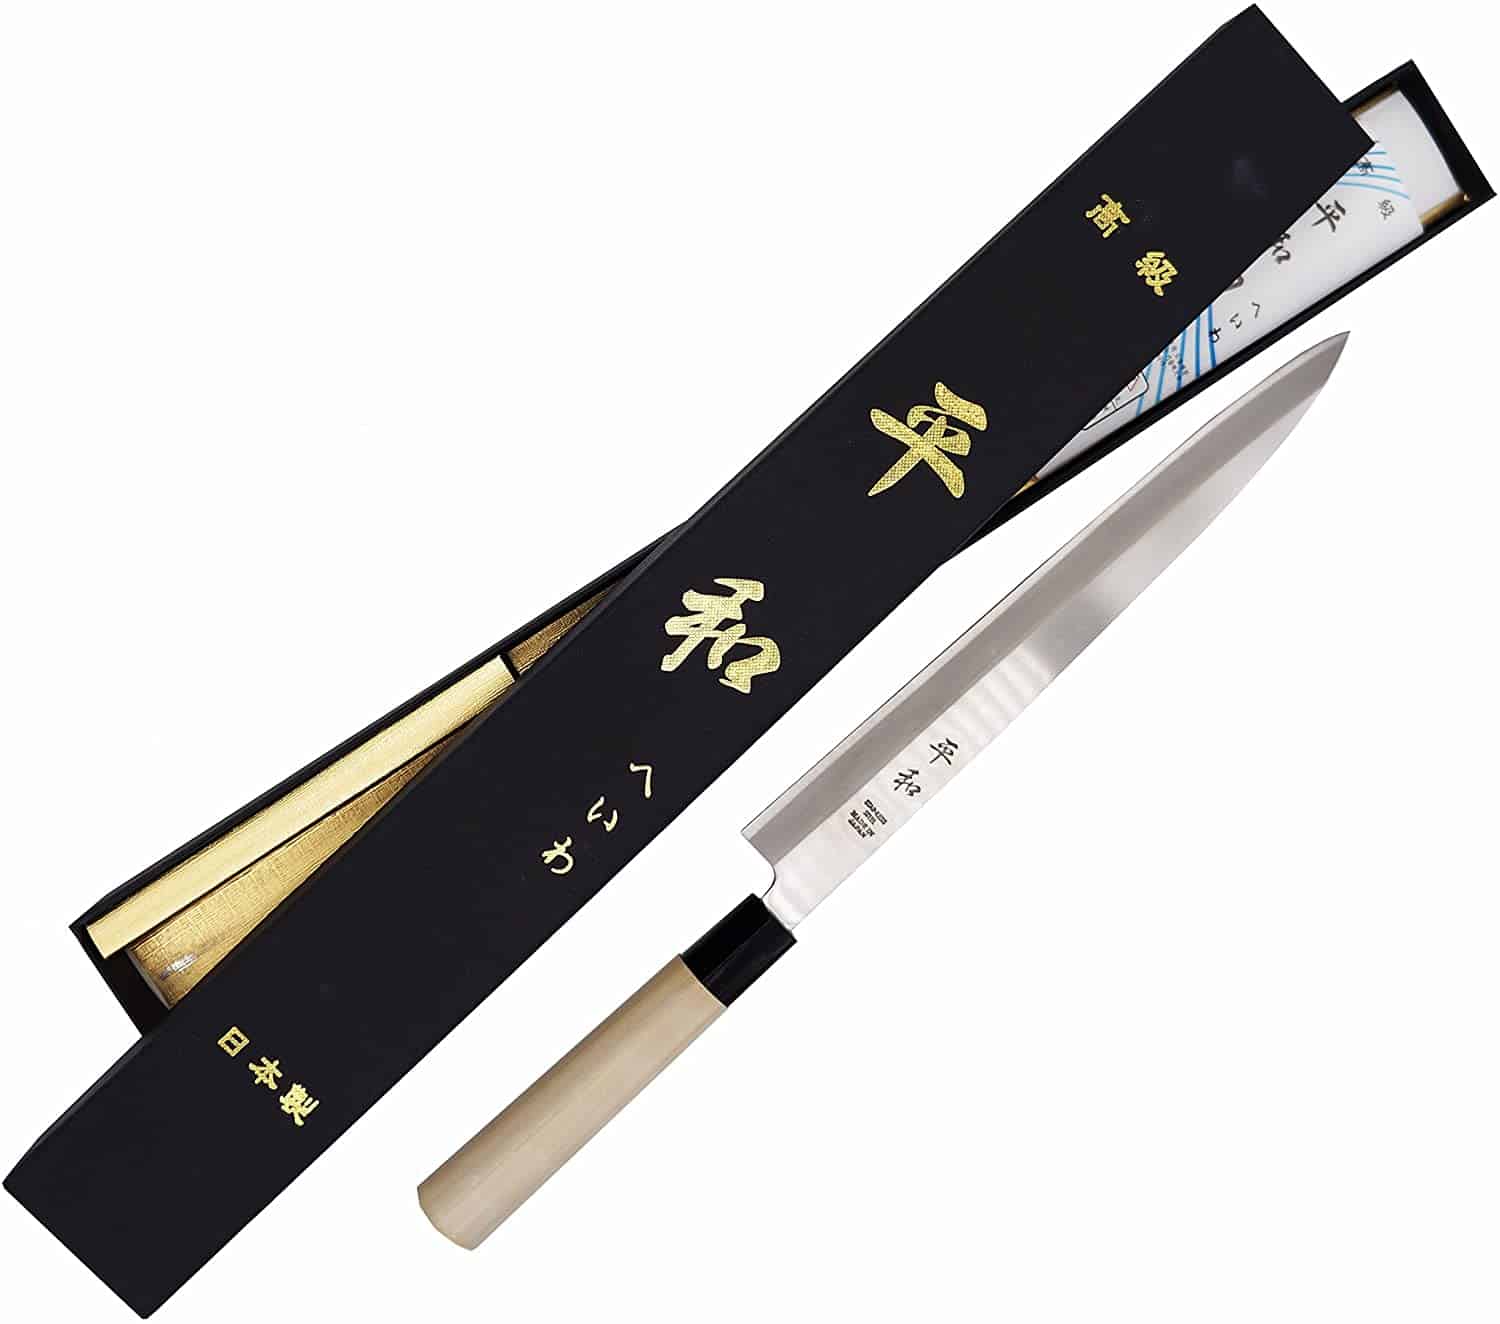 Bästa vänsterhänta sushikniven- KS&E Hasegawa 10 Inch